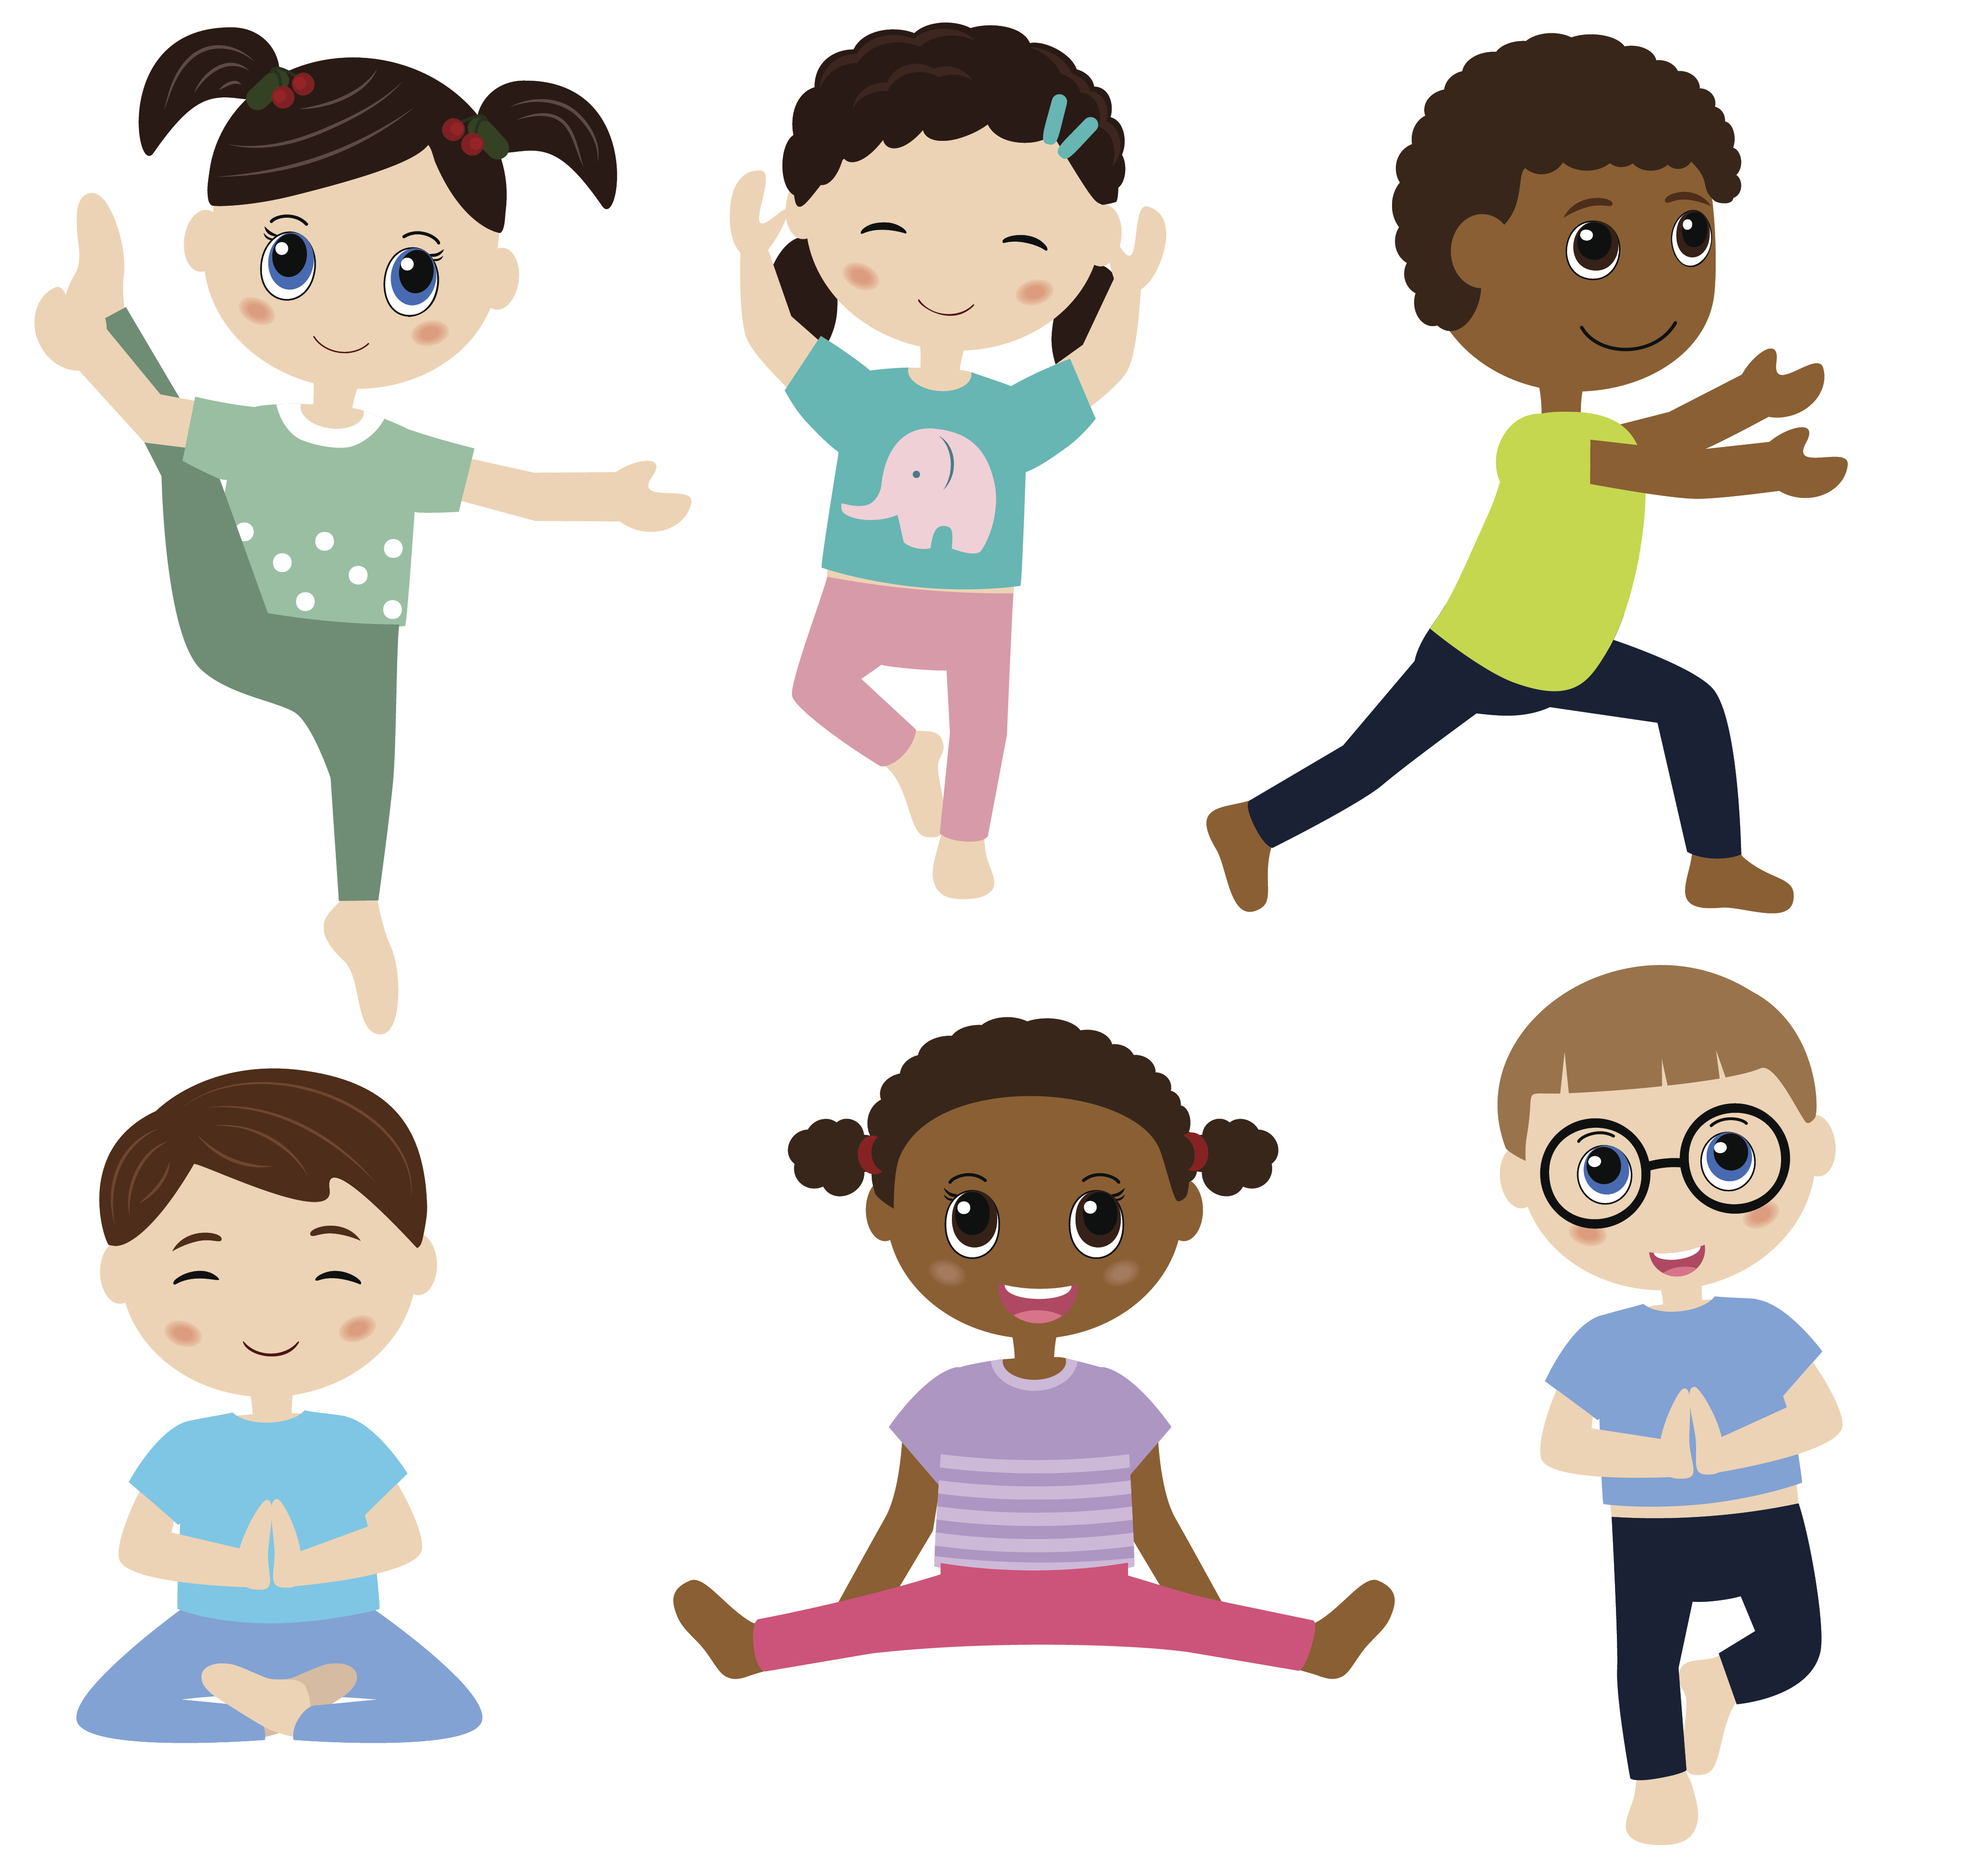 Cartoon children in yoga poses